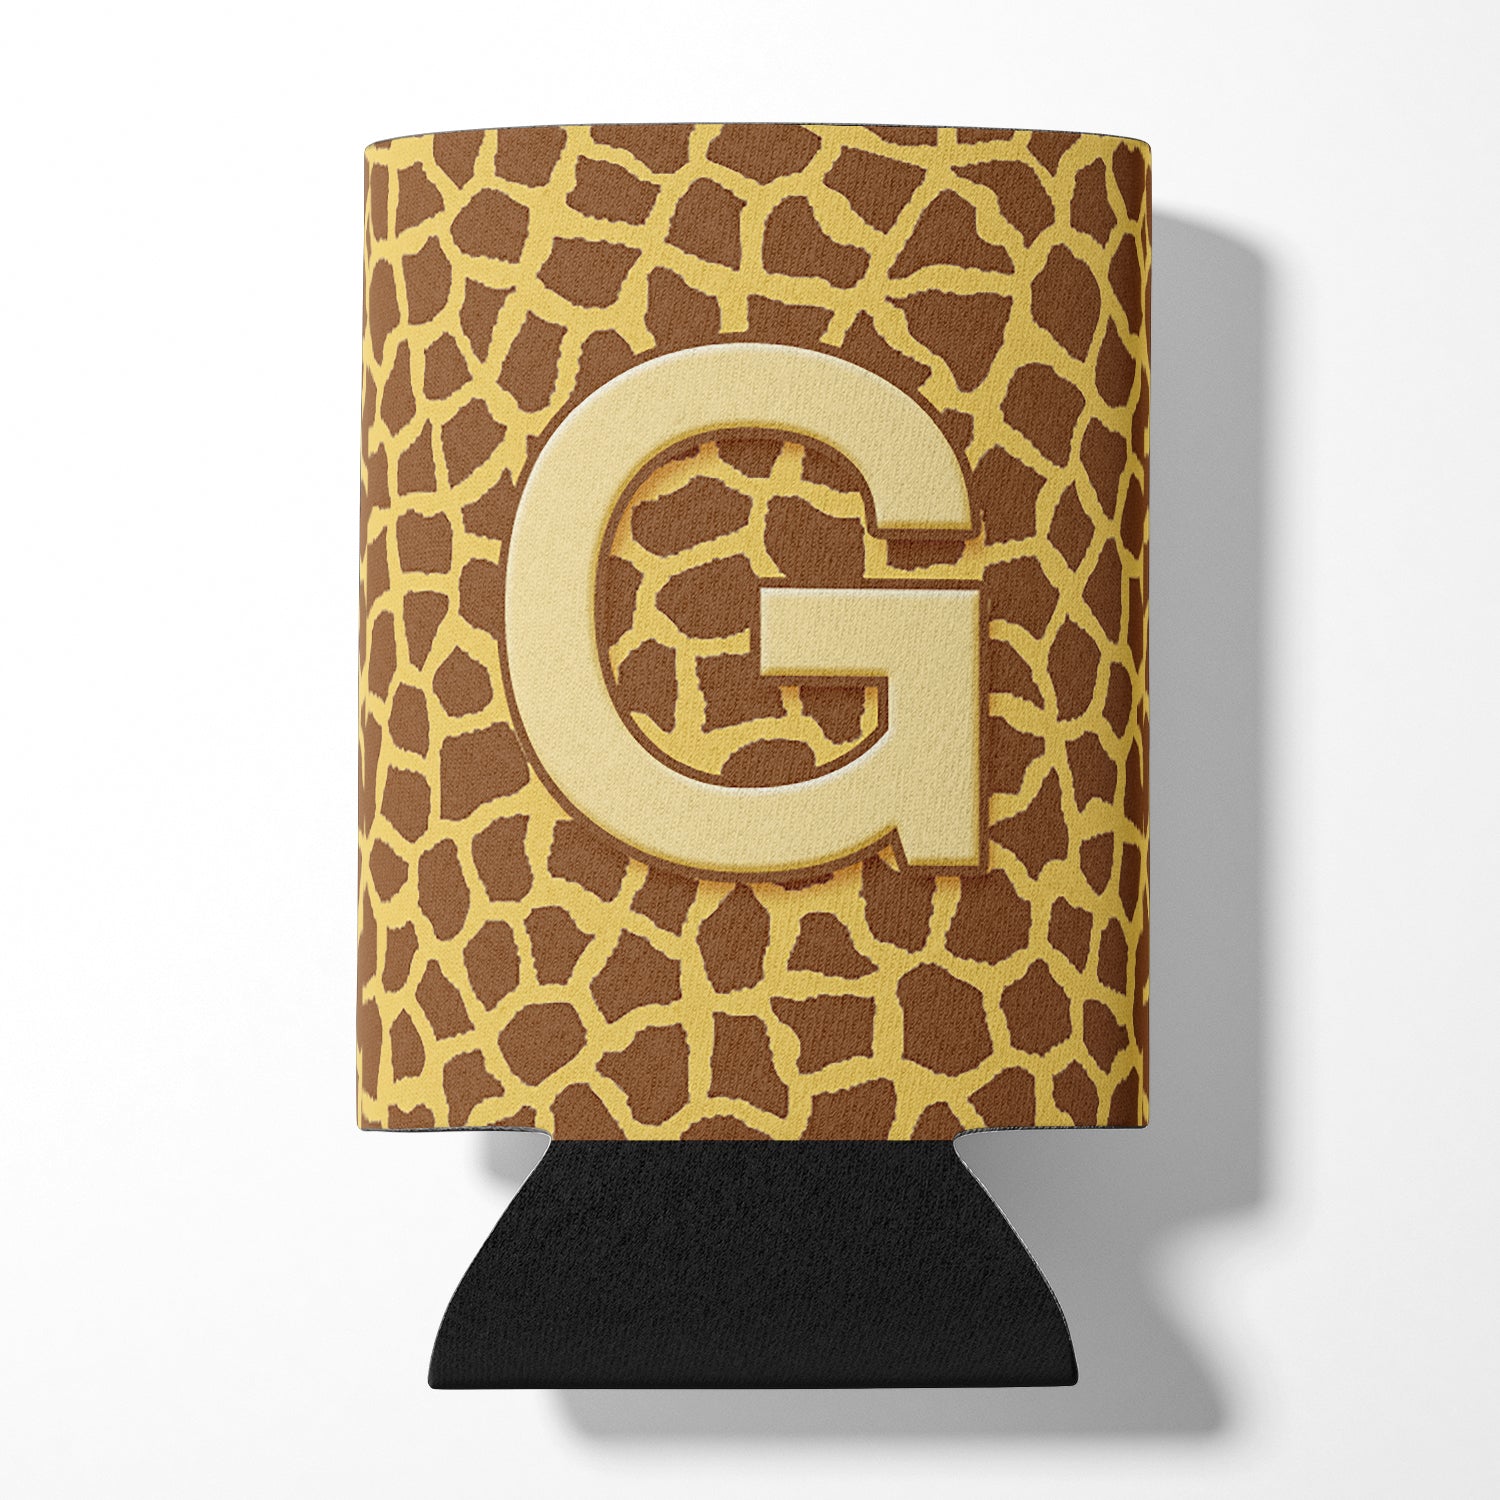 Letter G Initial Monogram - Giraffe Can or Bottle Beverage Insulator Hugger